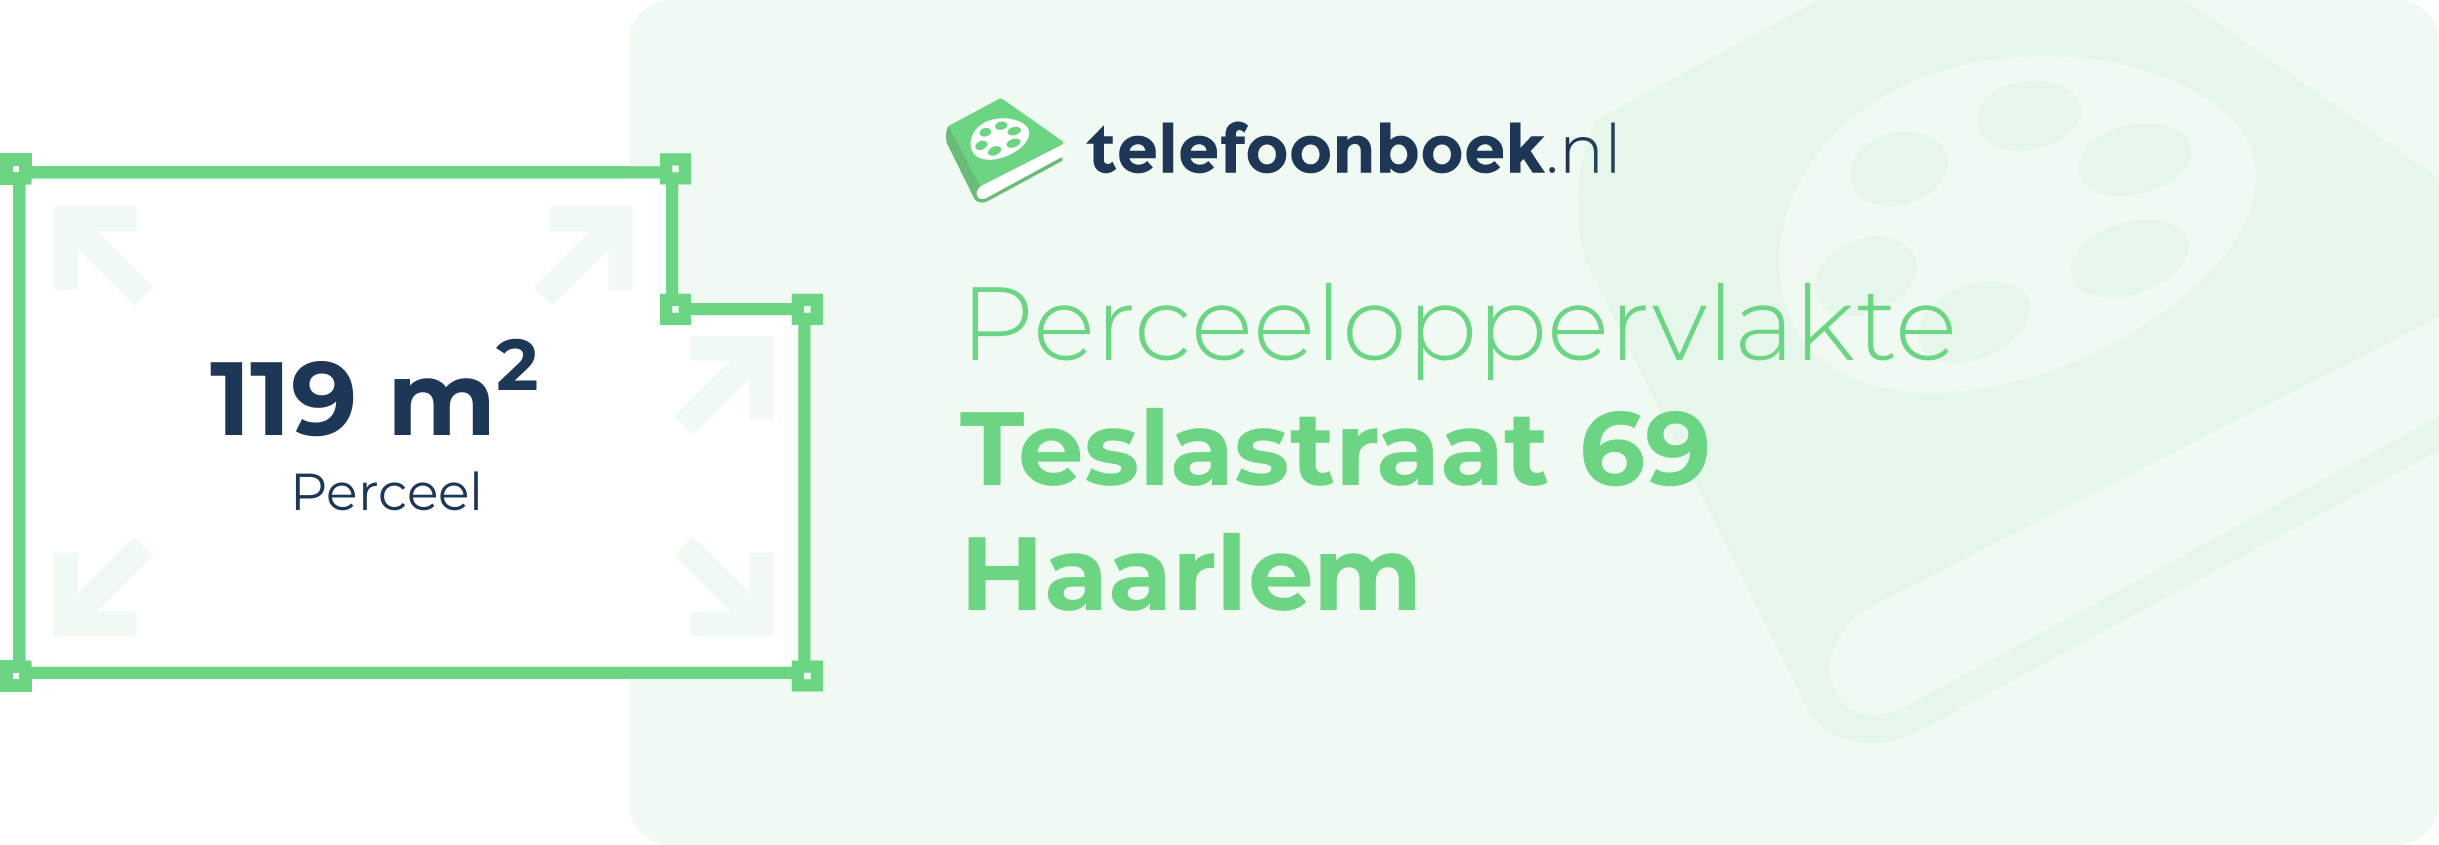 Perceeloppervlakte Teslastraat 69 Haarlem